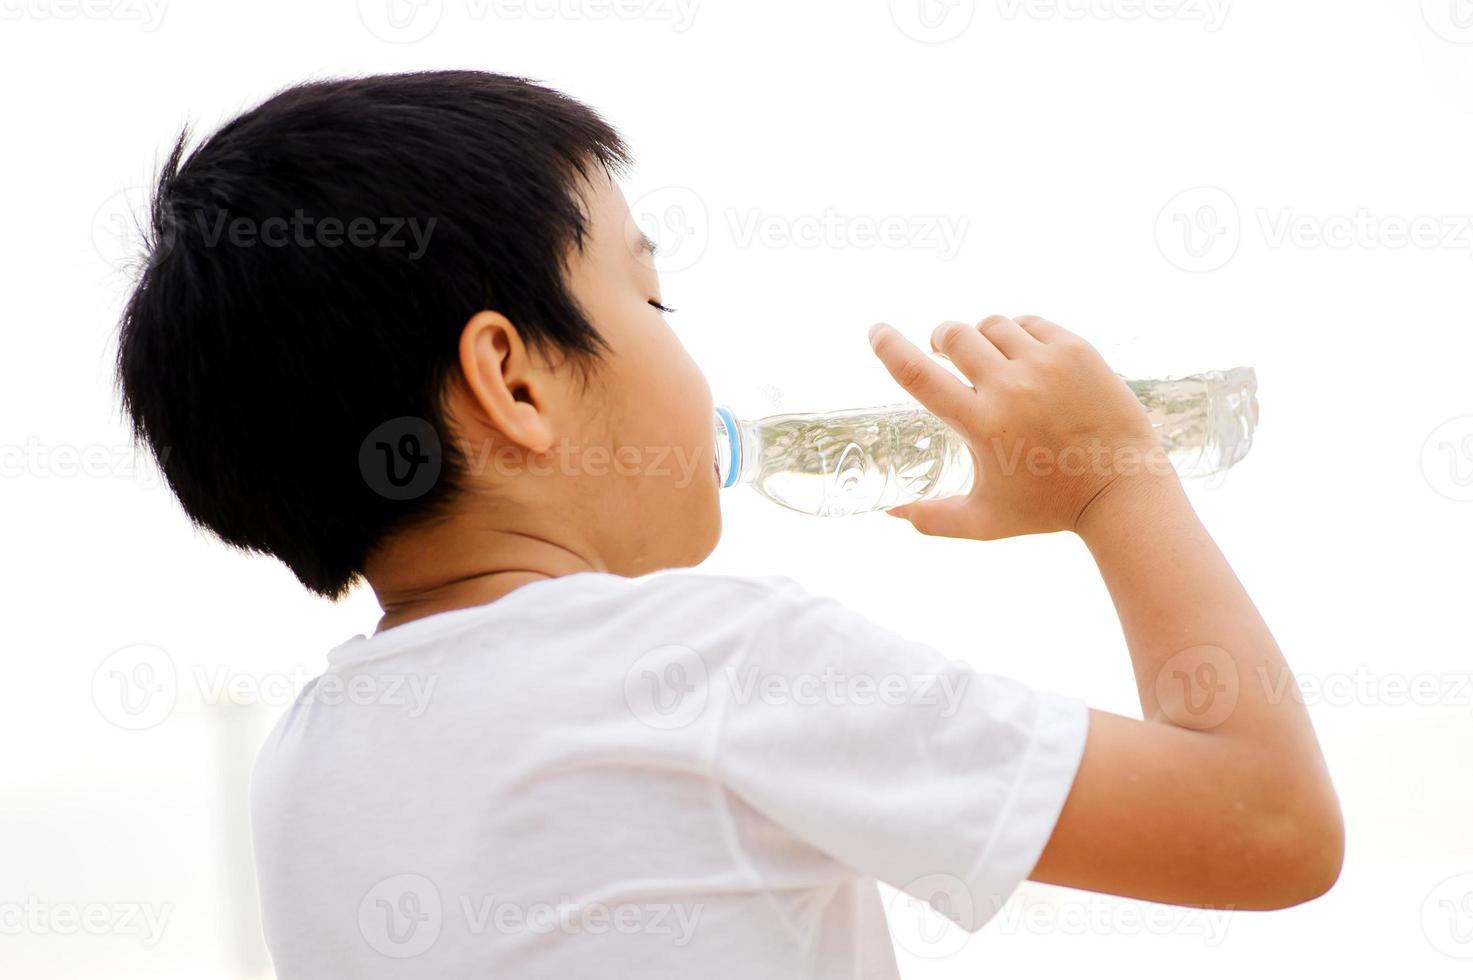 pojke dricker vatten från flaskan foto